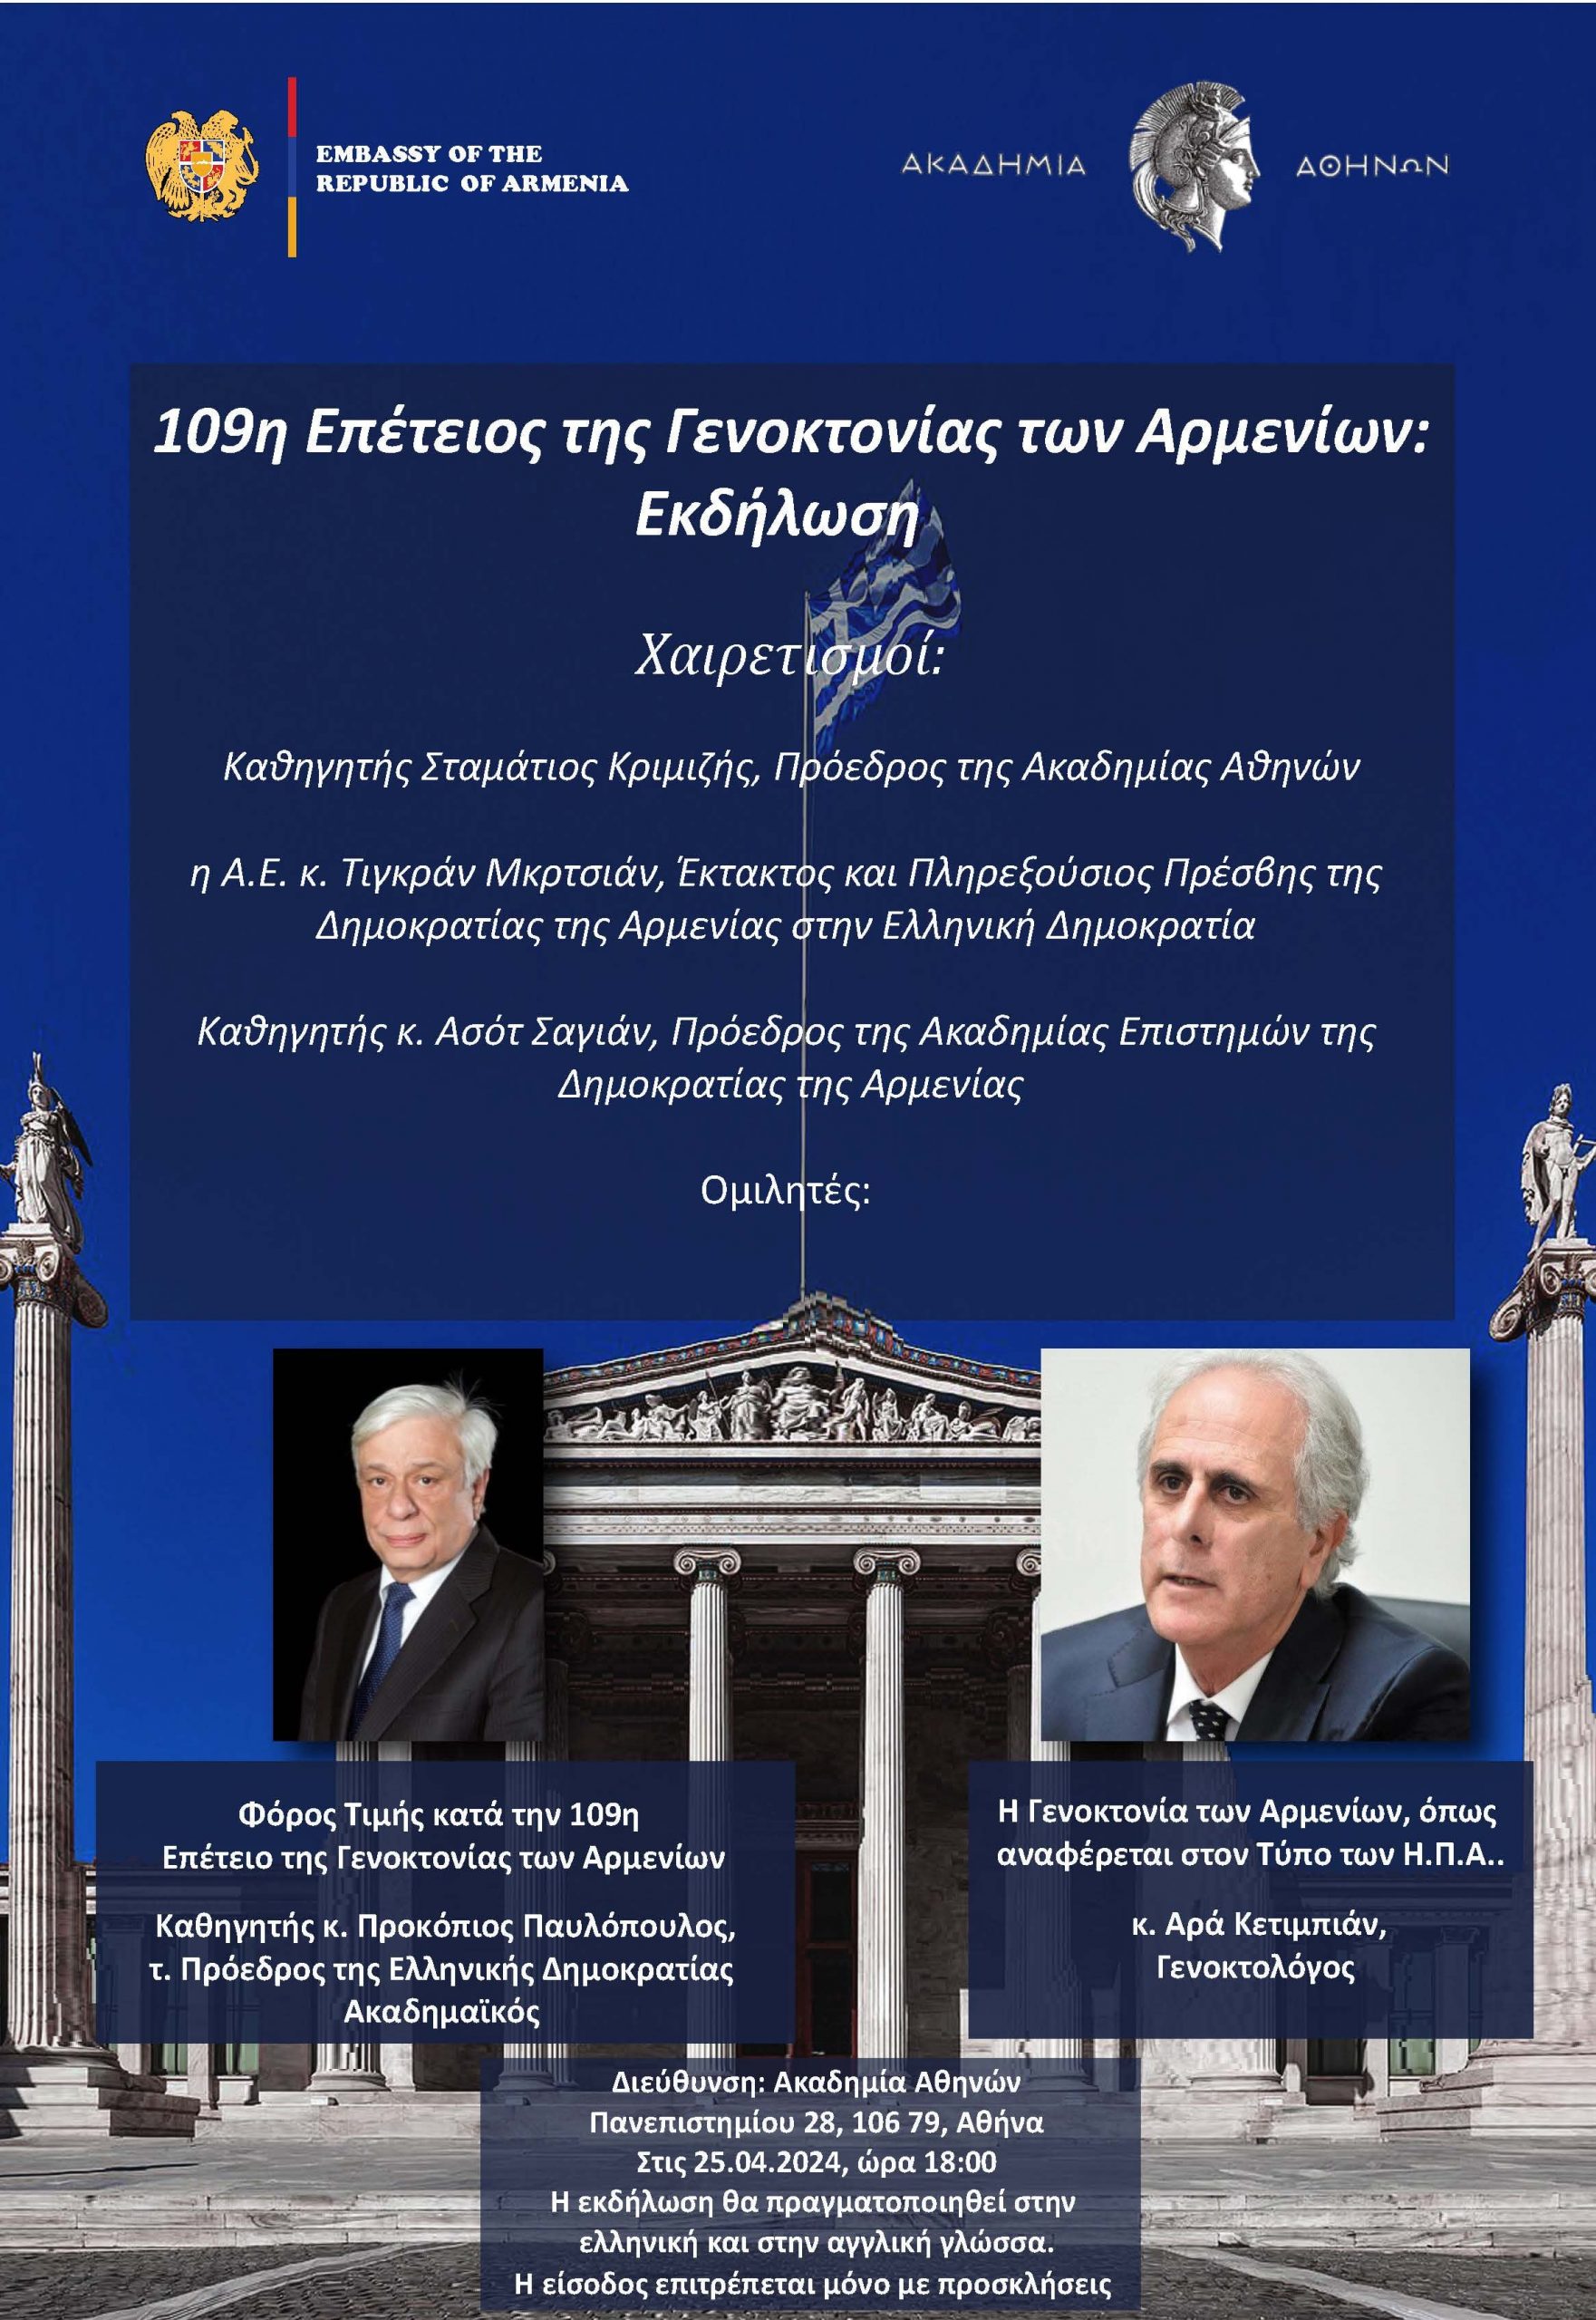 Εκδήλωση μνήμης για τη Γενοκτονία των Αρμενίων στην Ακαδημία των Αθηνών